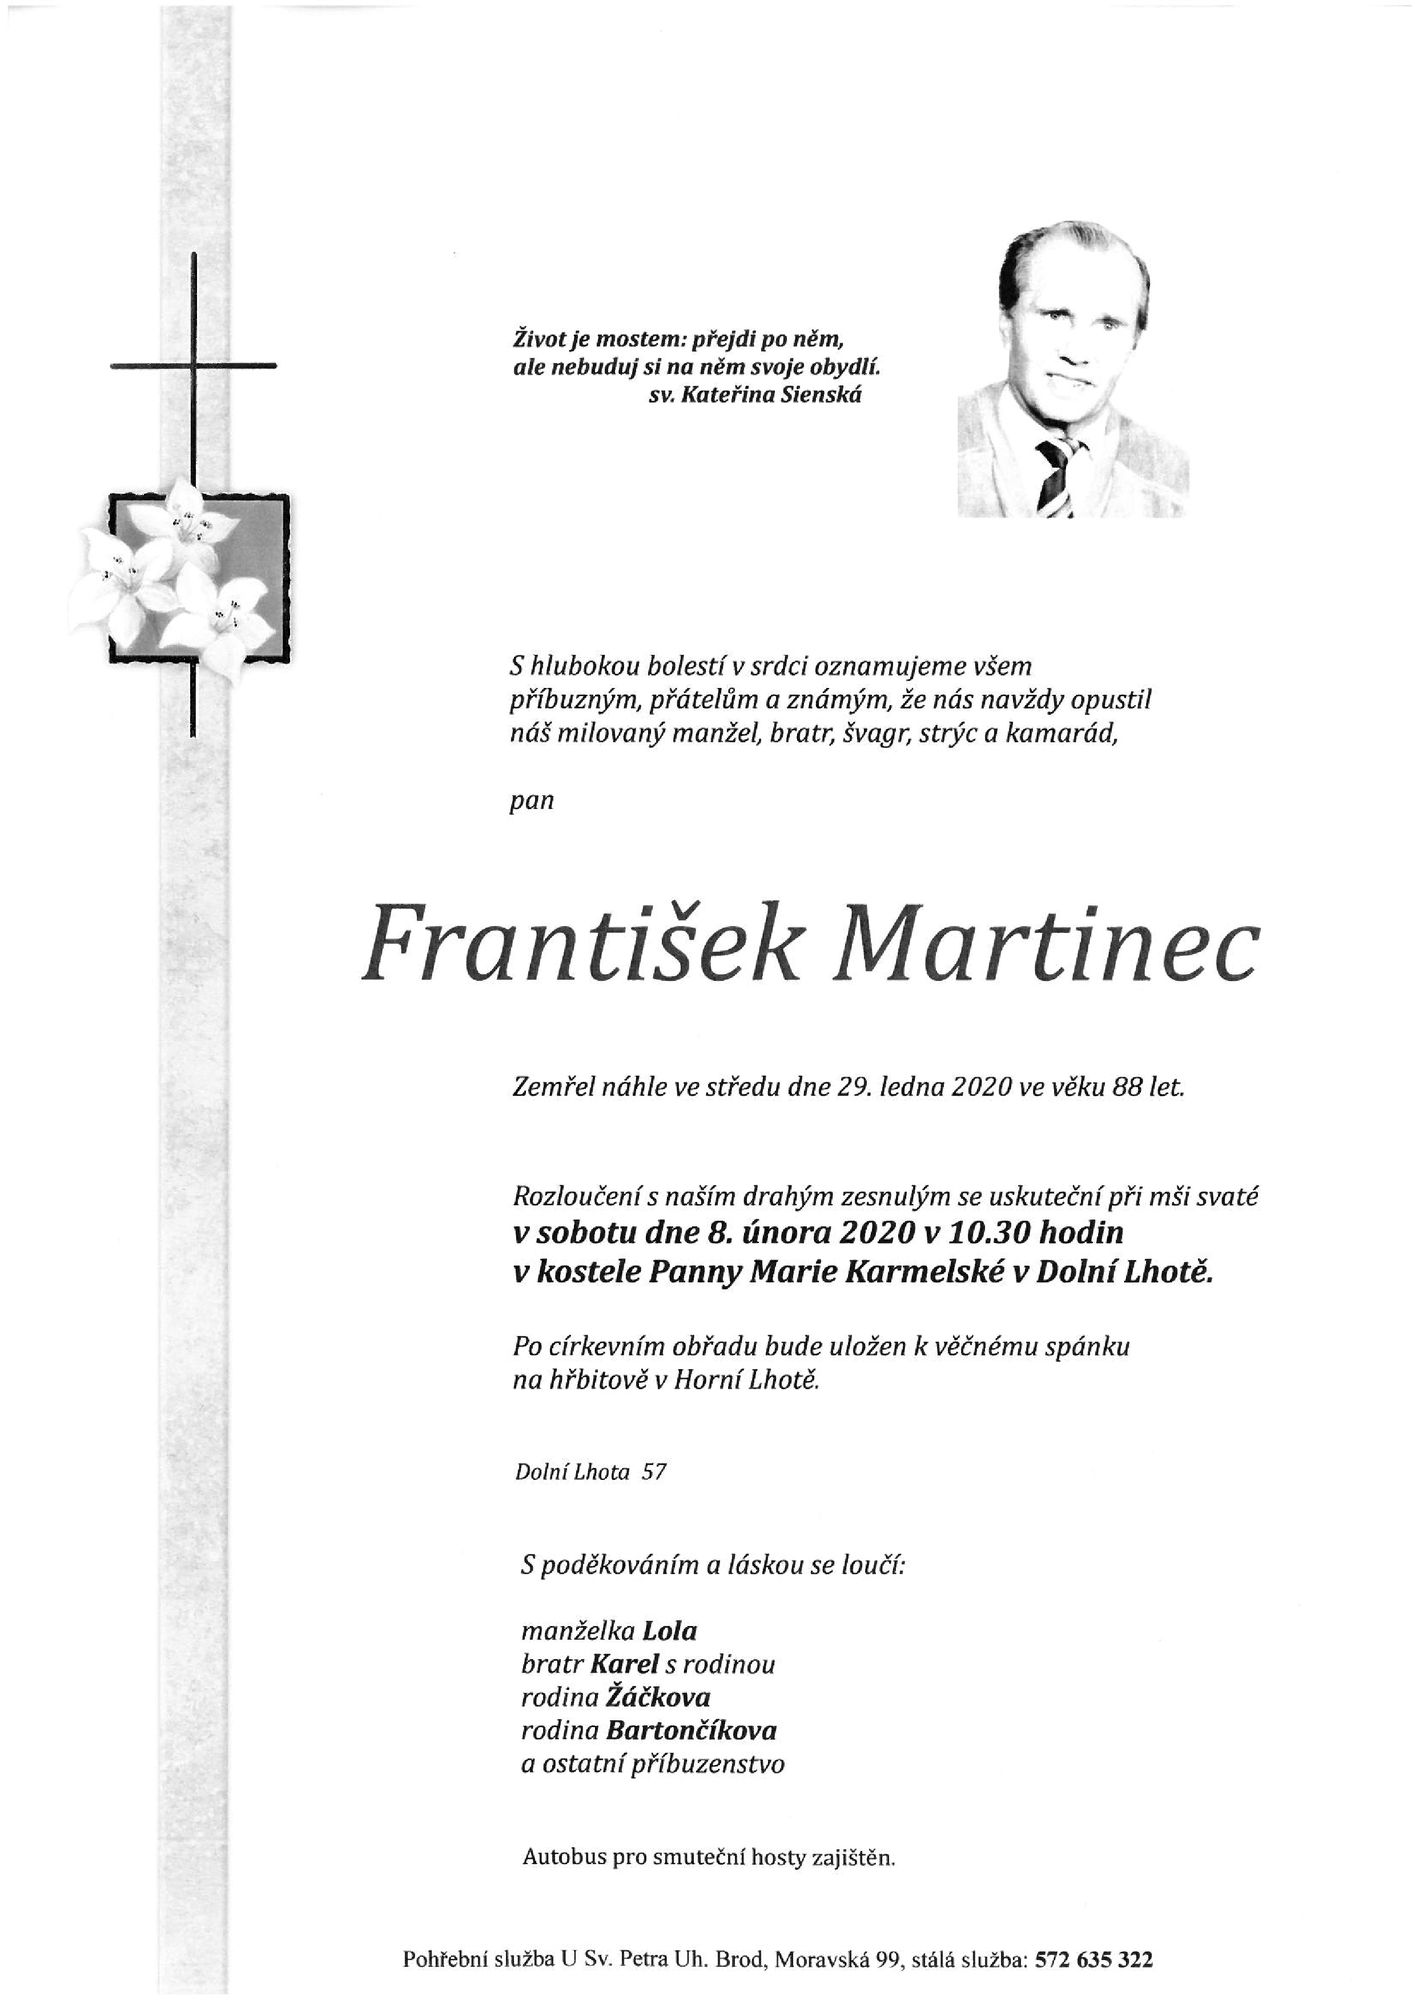 František Martinec